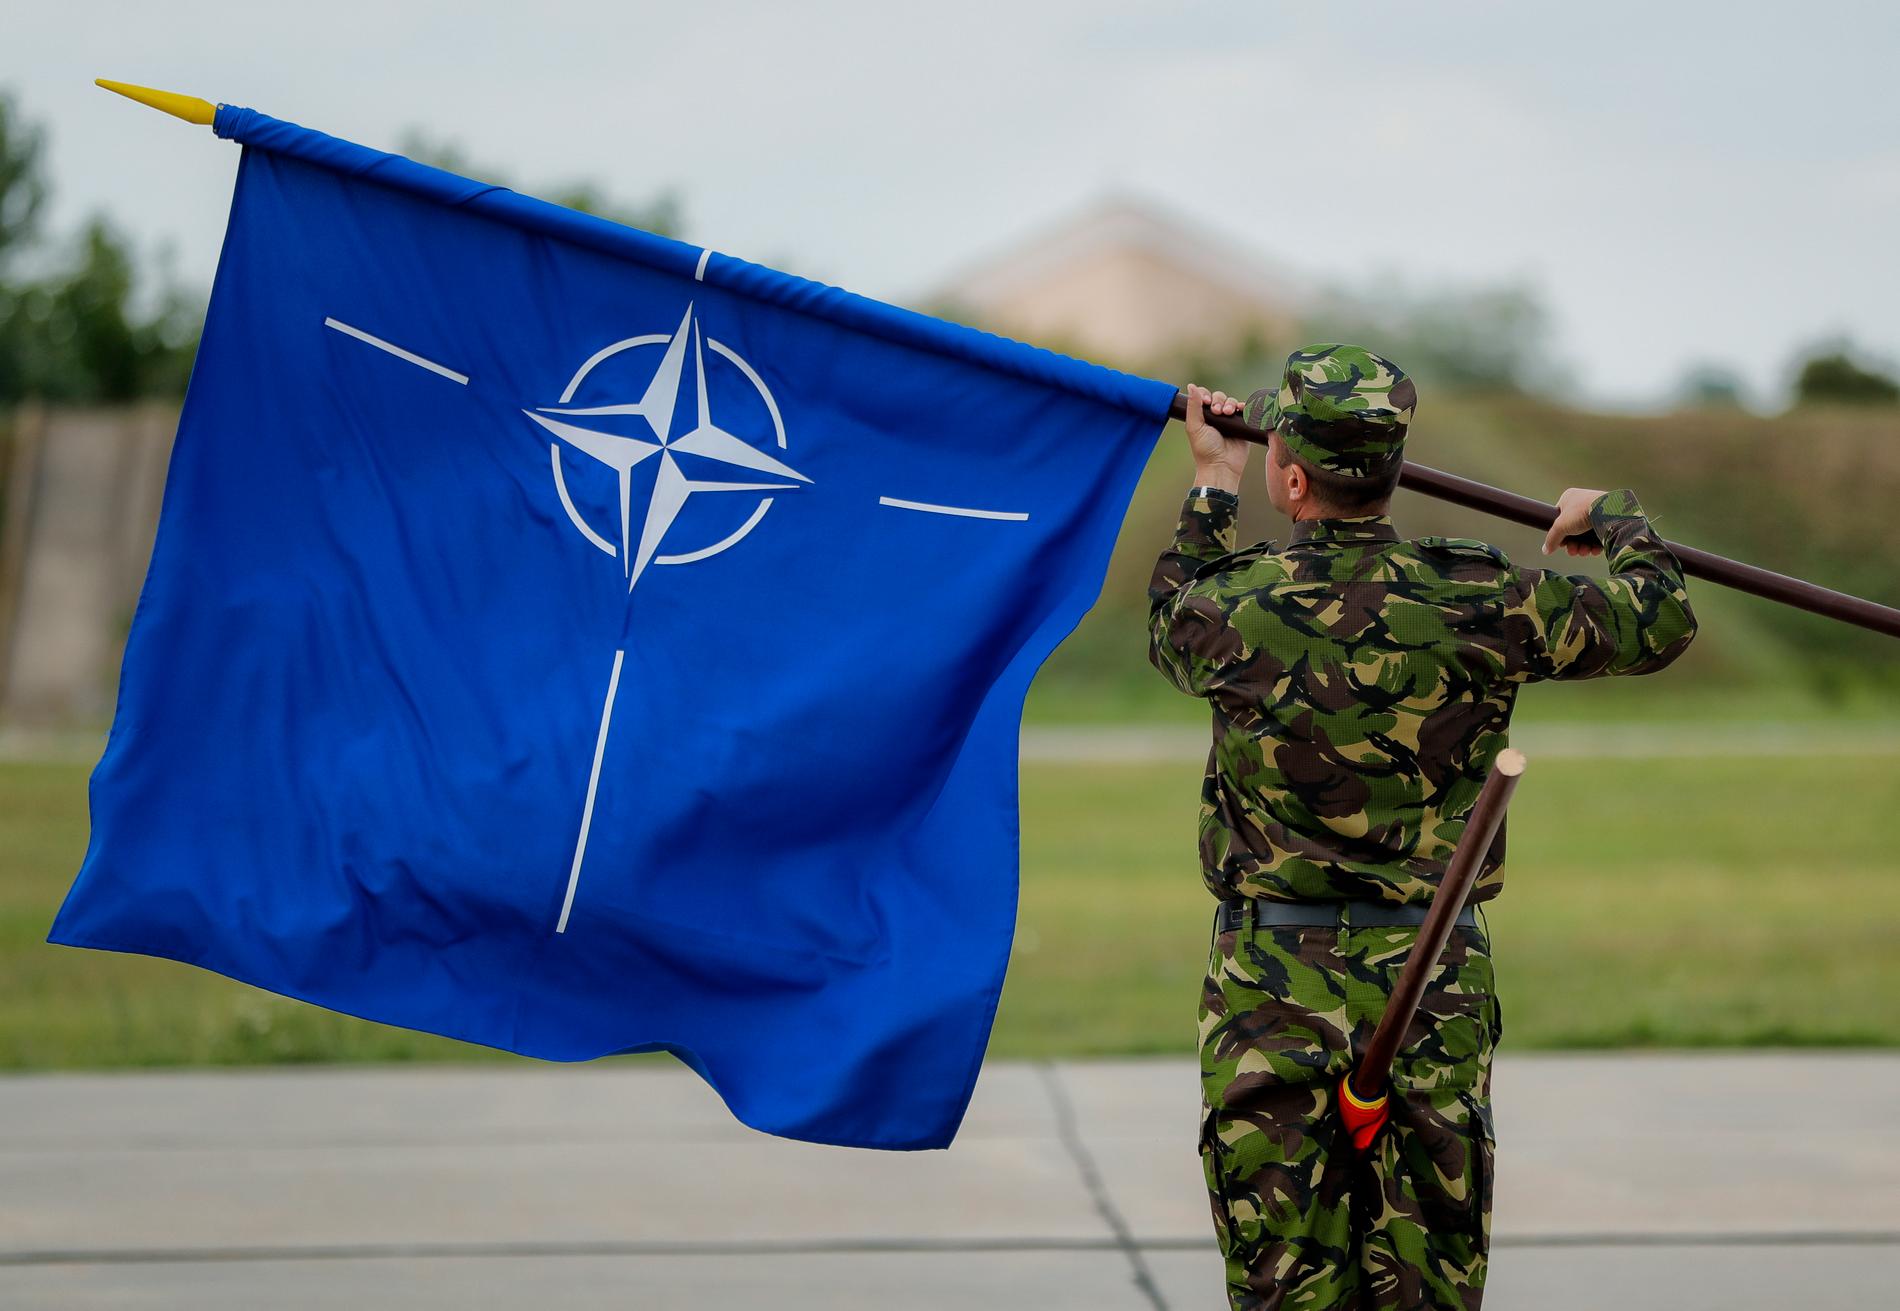 Natoflaggan, en vit kompass mot en blå bakgrund. Den blå färgen symboliserar Atlanten och ringen som innesluter kompassen står för enighet. Arkivbild.